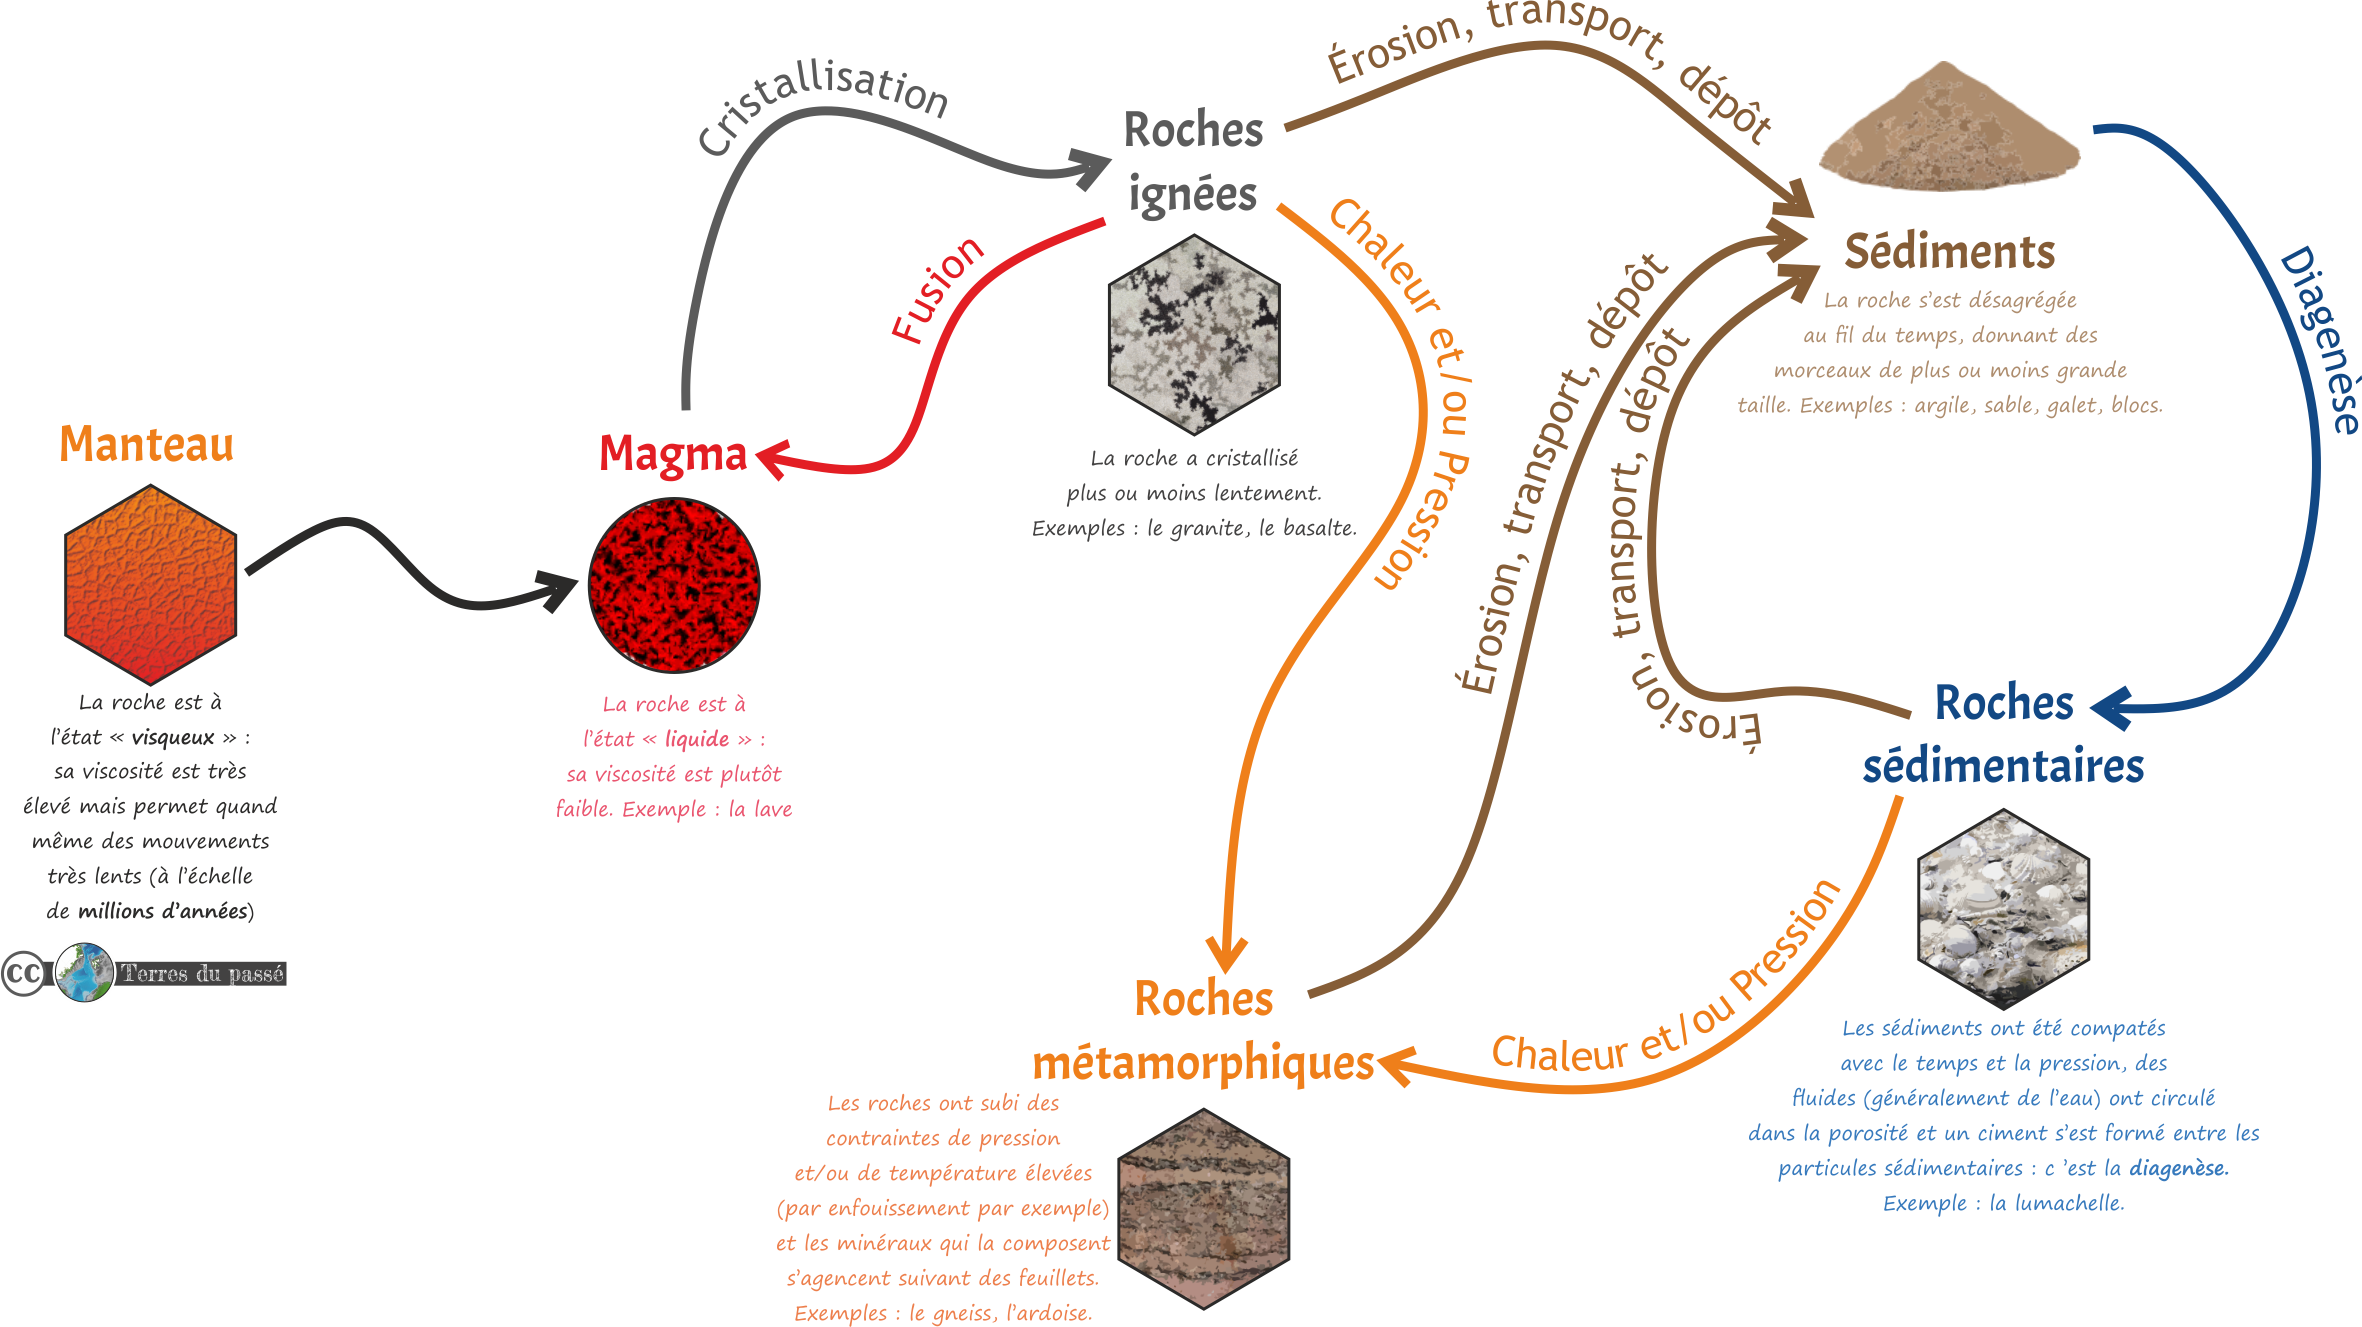 le cycle des roches - magma - ignée - sédiment - roche sédimentaire - métamorphique